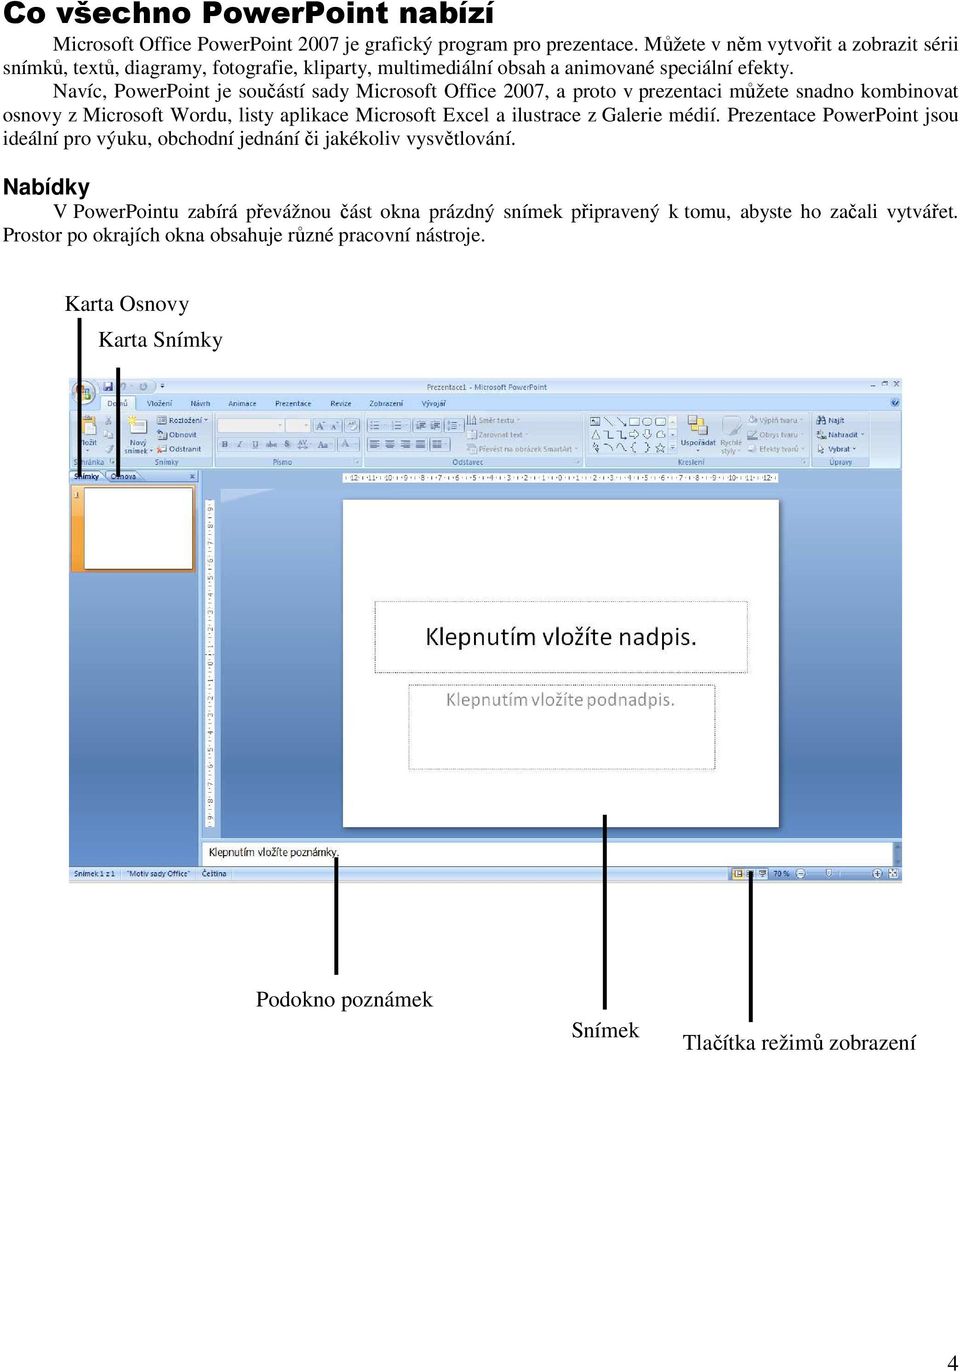 Navíc, PowerPoint je součástí sady Microsoft Office 2007, a proto v prezentaci můžete snadno kombinovat osnovy z Microsoft Wordu, listy aplikace Microsoft Excel a ilustrace z Galerie médií.